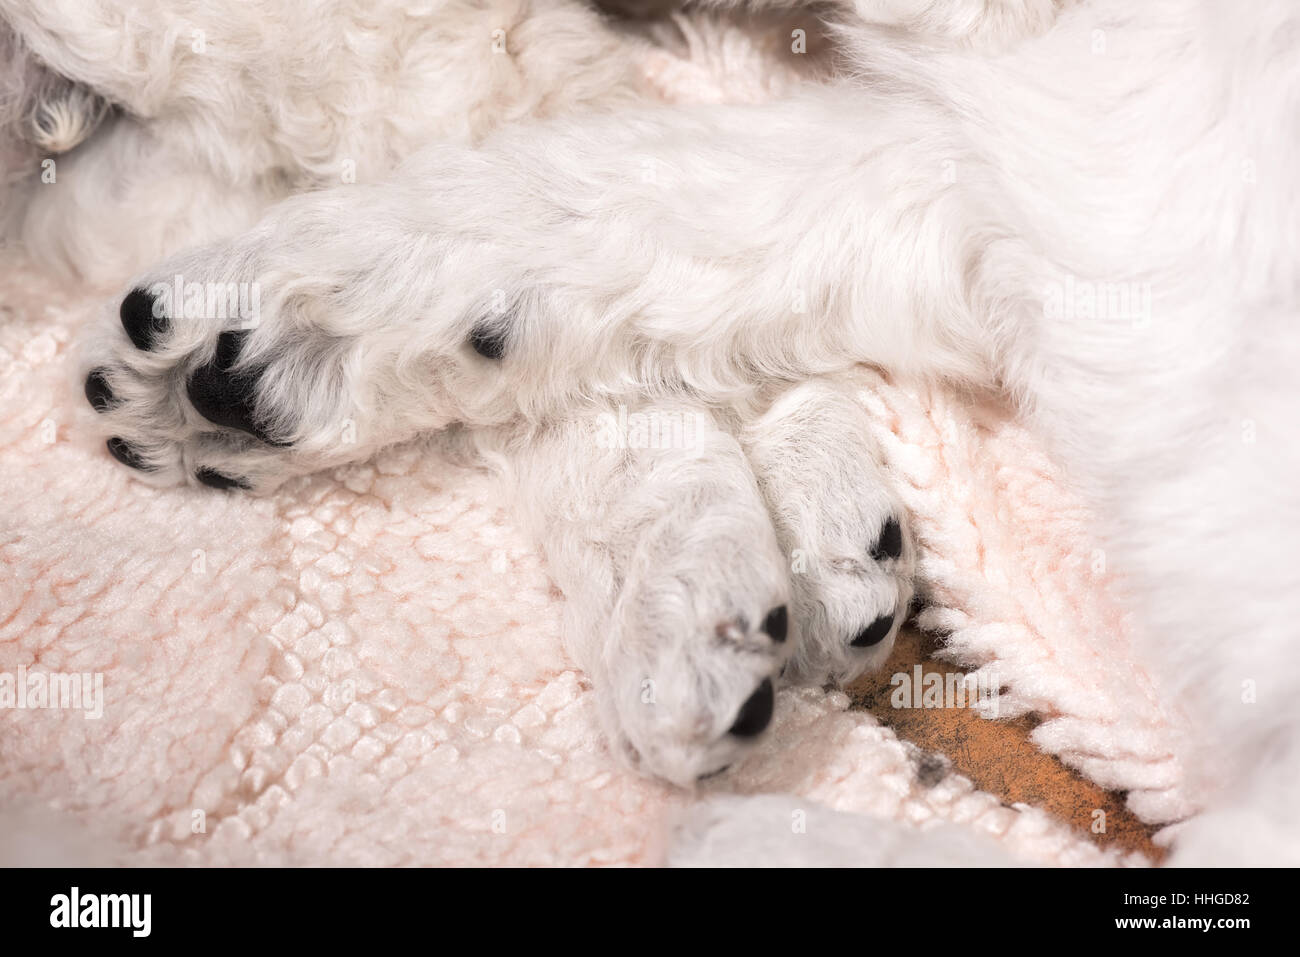 Sei settimane vecchio bianco standard poodle cuccioli con pelliccia di ricci e zampe nere in appoggio su un tappeto. Foto Stock